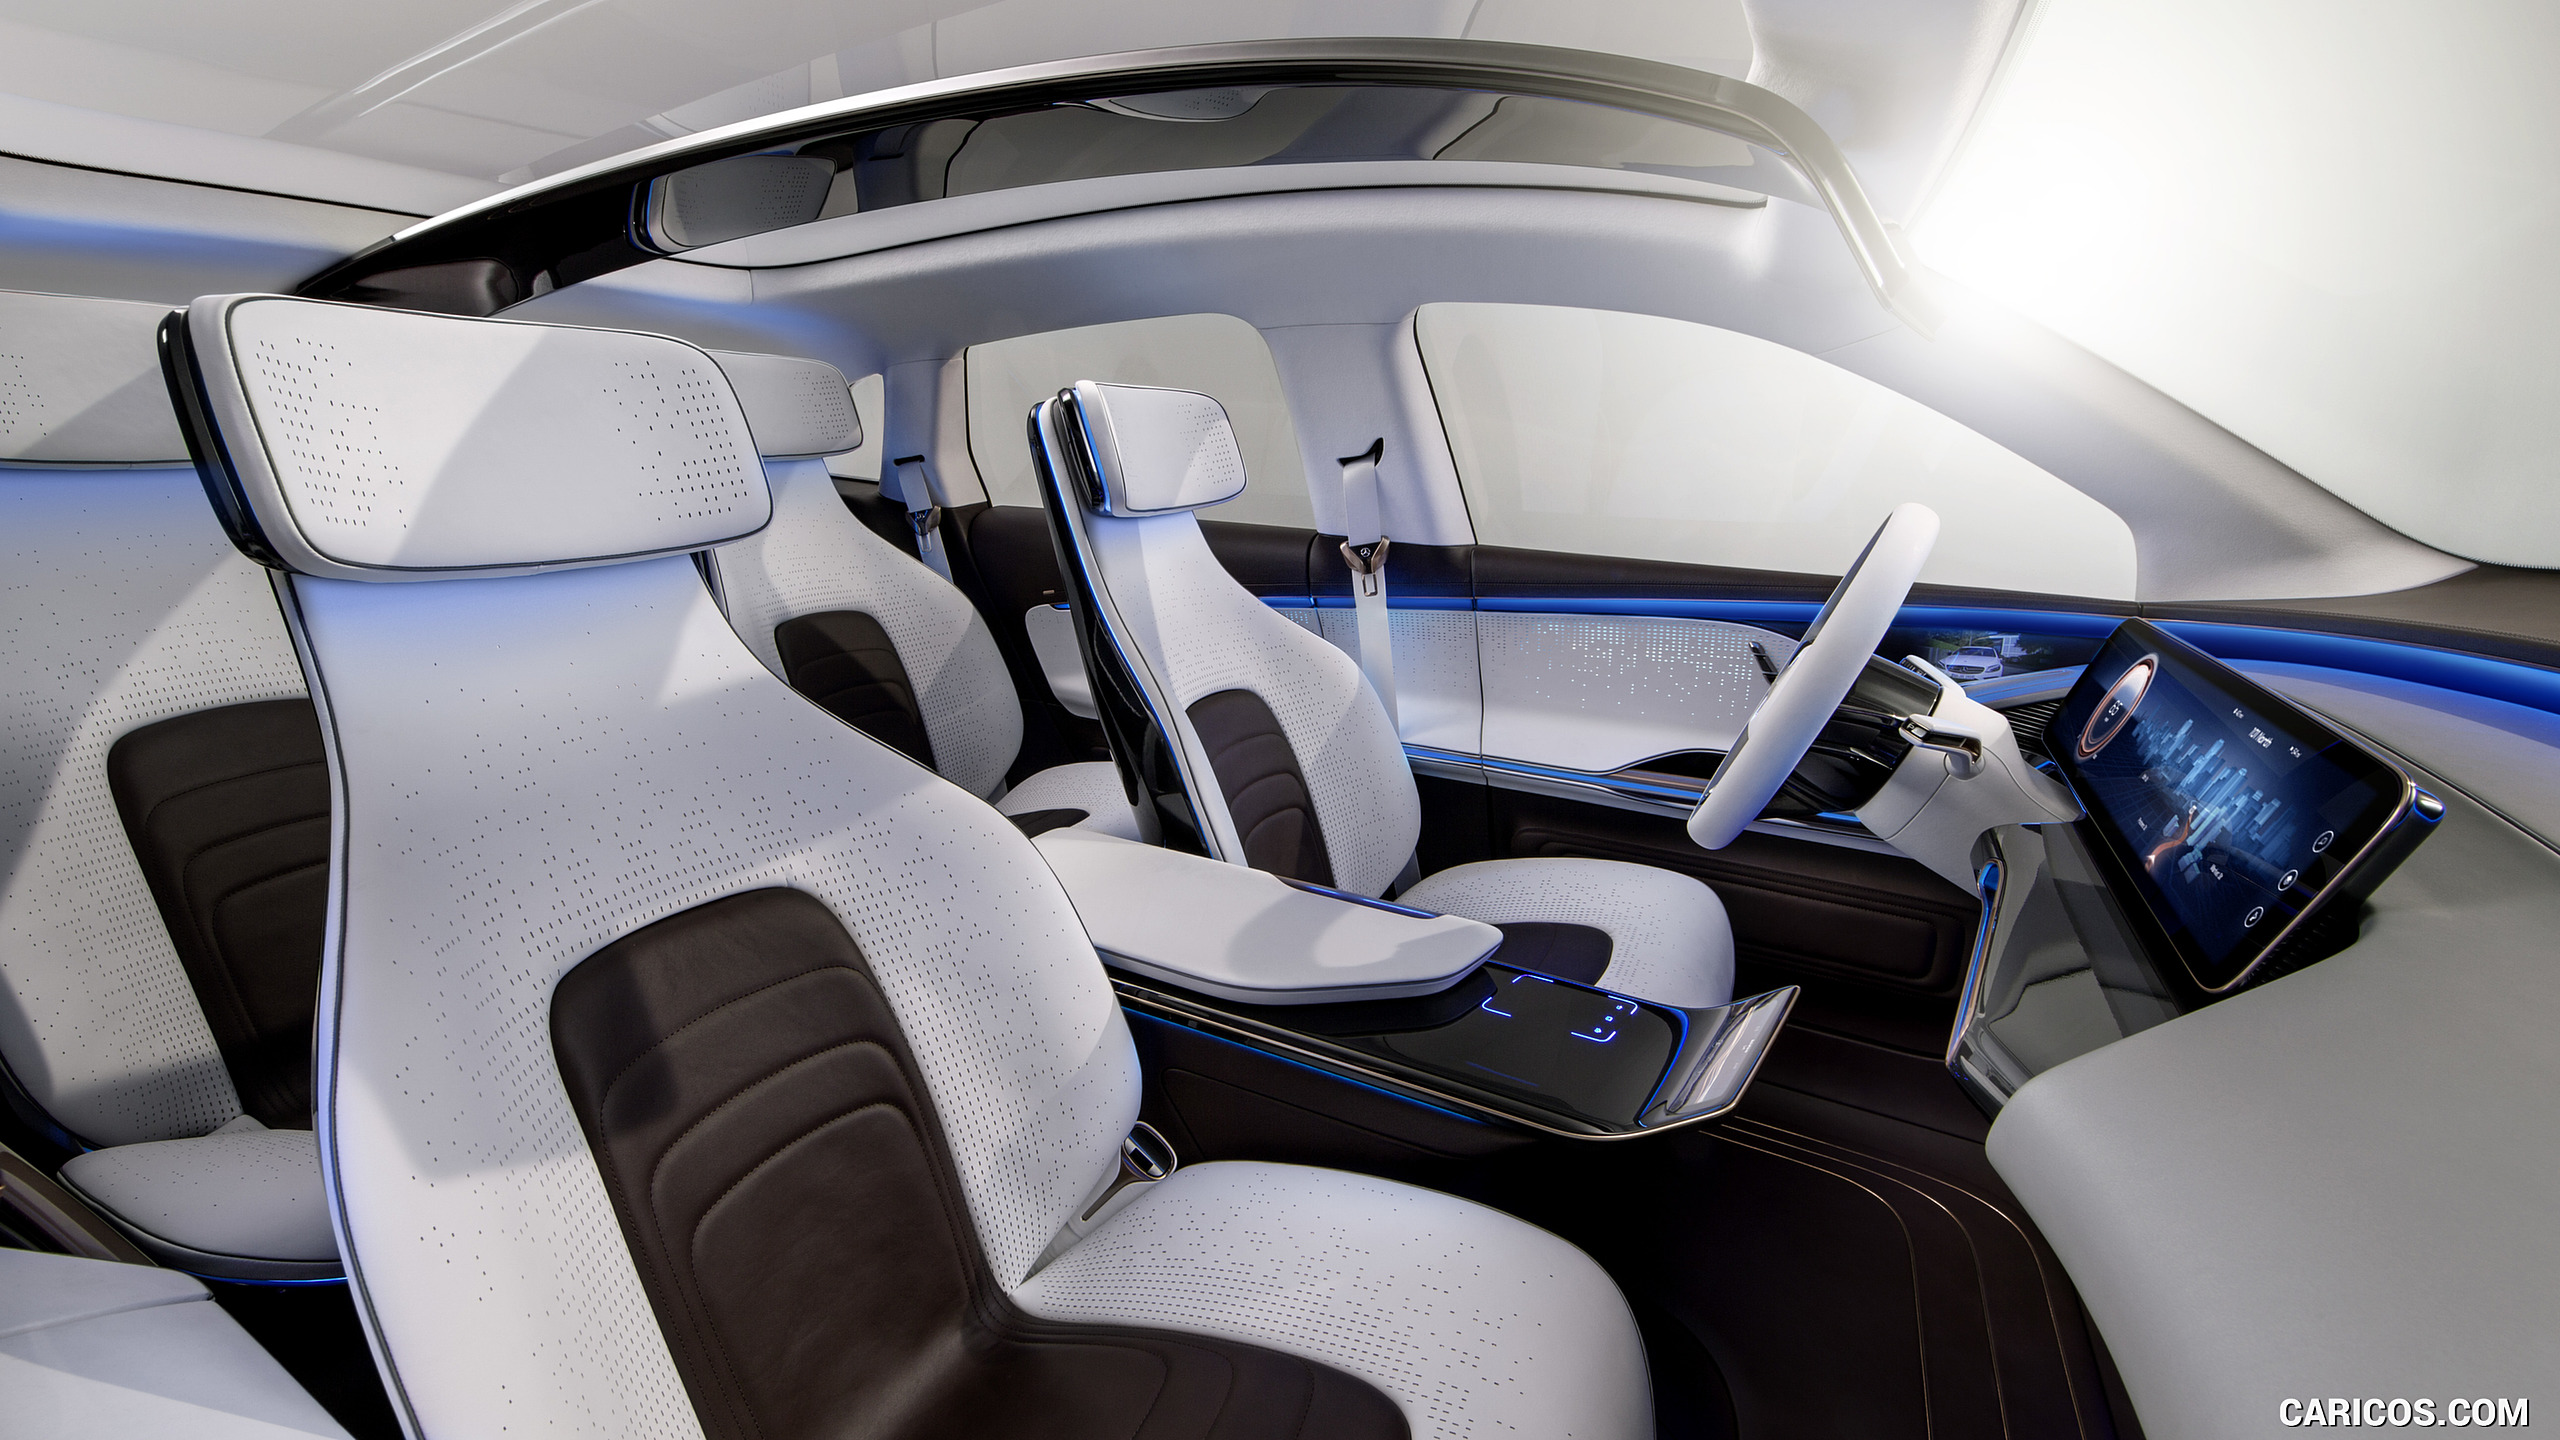 2016 Mercedes-Benz Generation EQ SUV Concept - Interior, Front Seats, #25 of 50